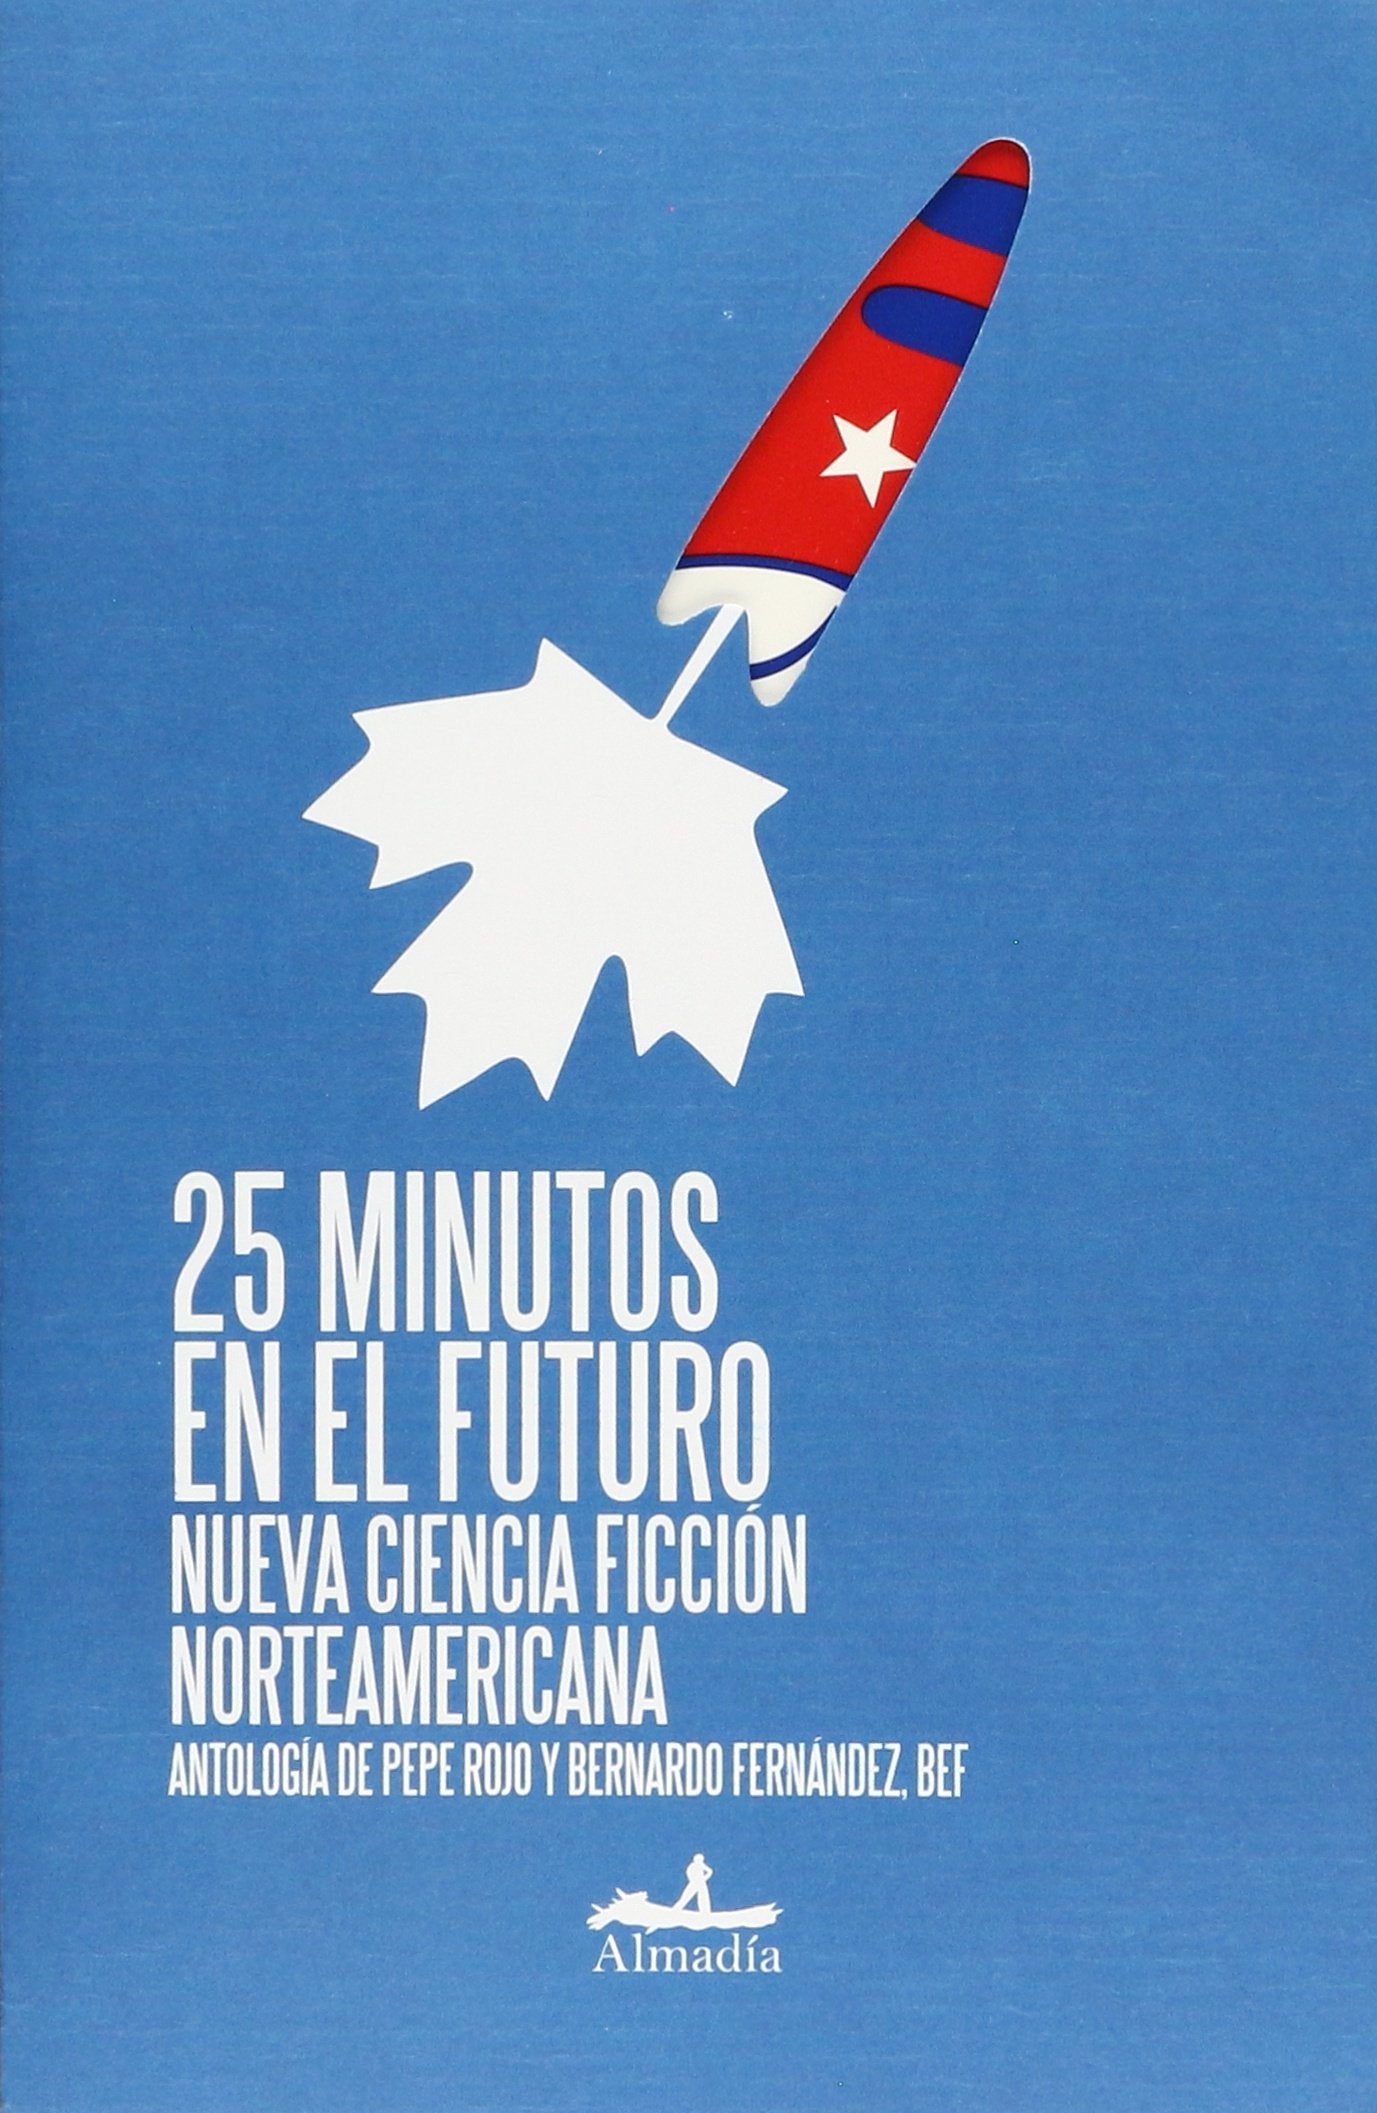 25 MINUTOS EN EL FUTURO -NUEVA CIENCIA FICCION NORTEAMERICANA (Paperback)